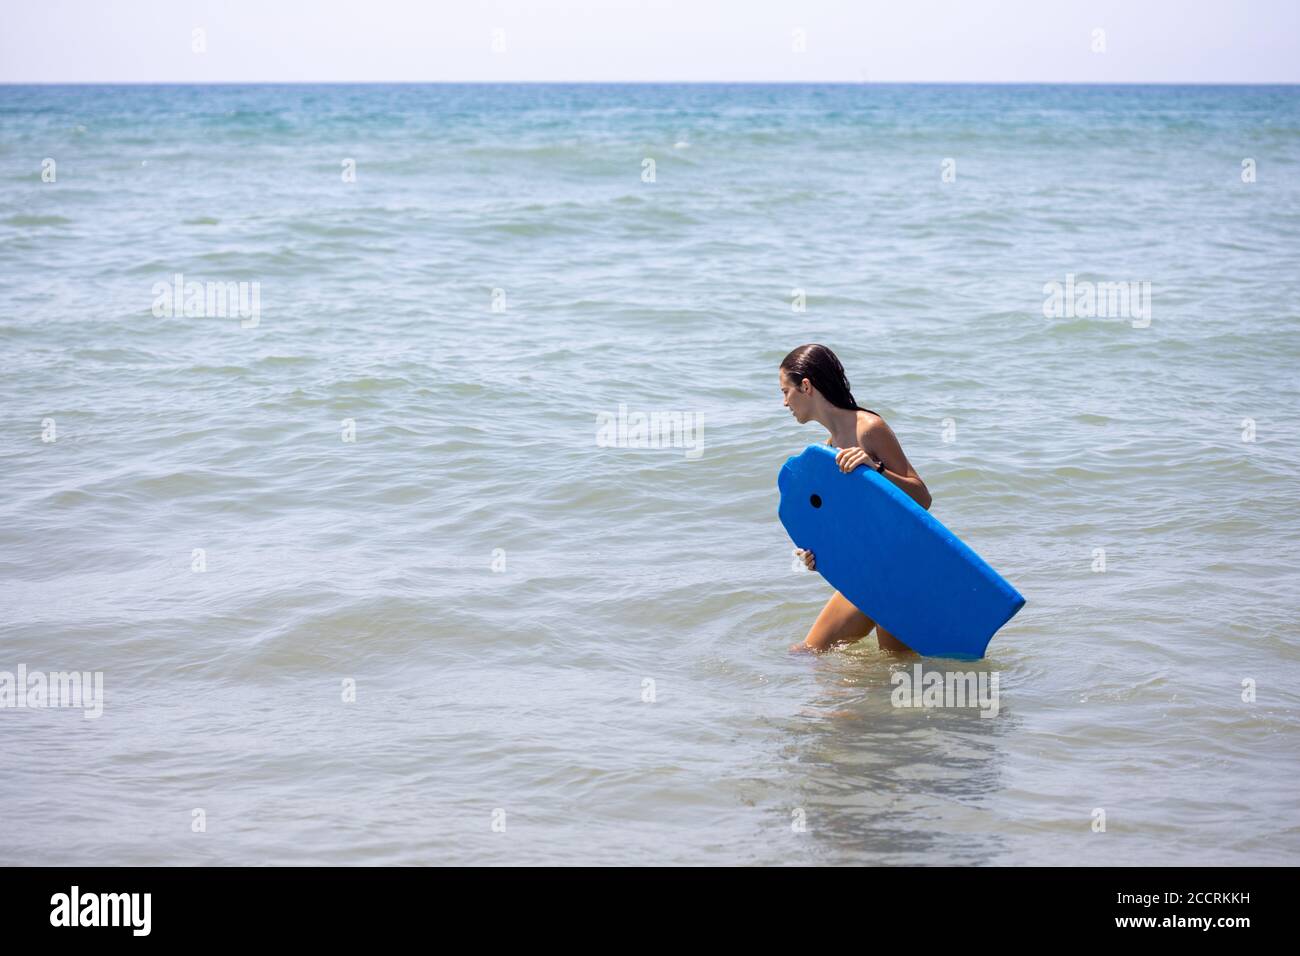 Une fille portant un bodyboard bleu sur la plage à commencez à surfer Banque D'Images